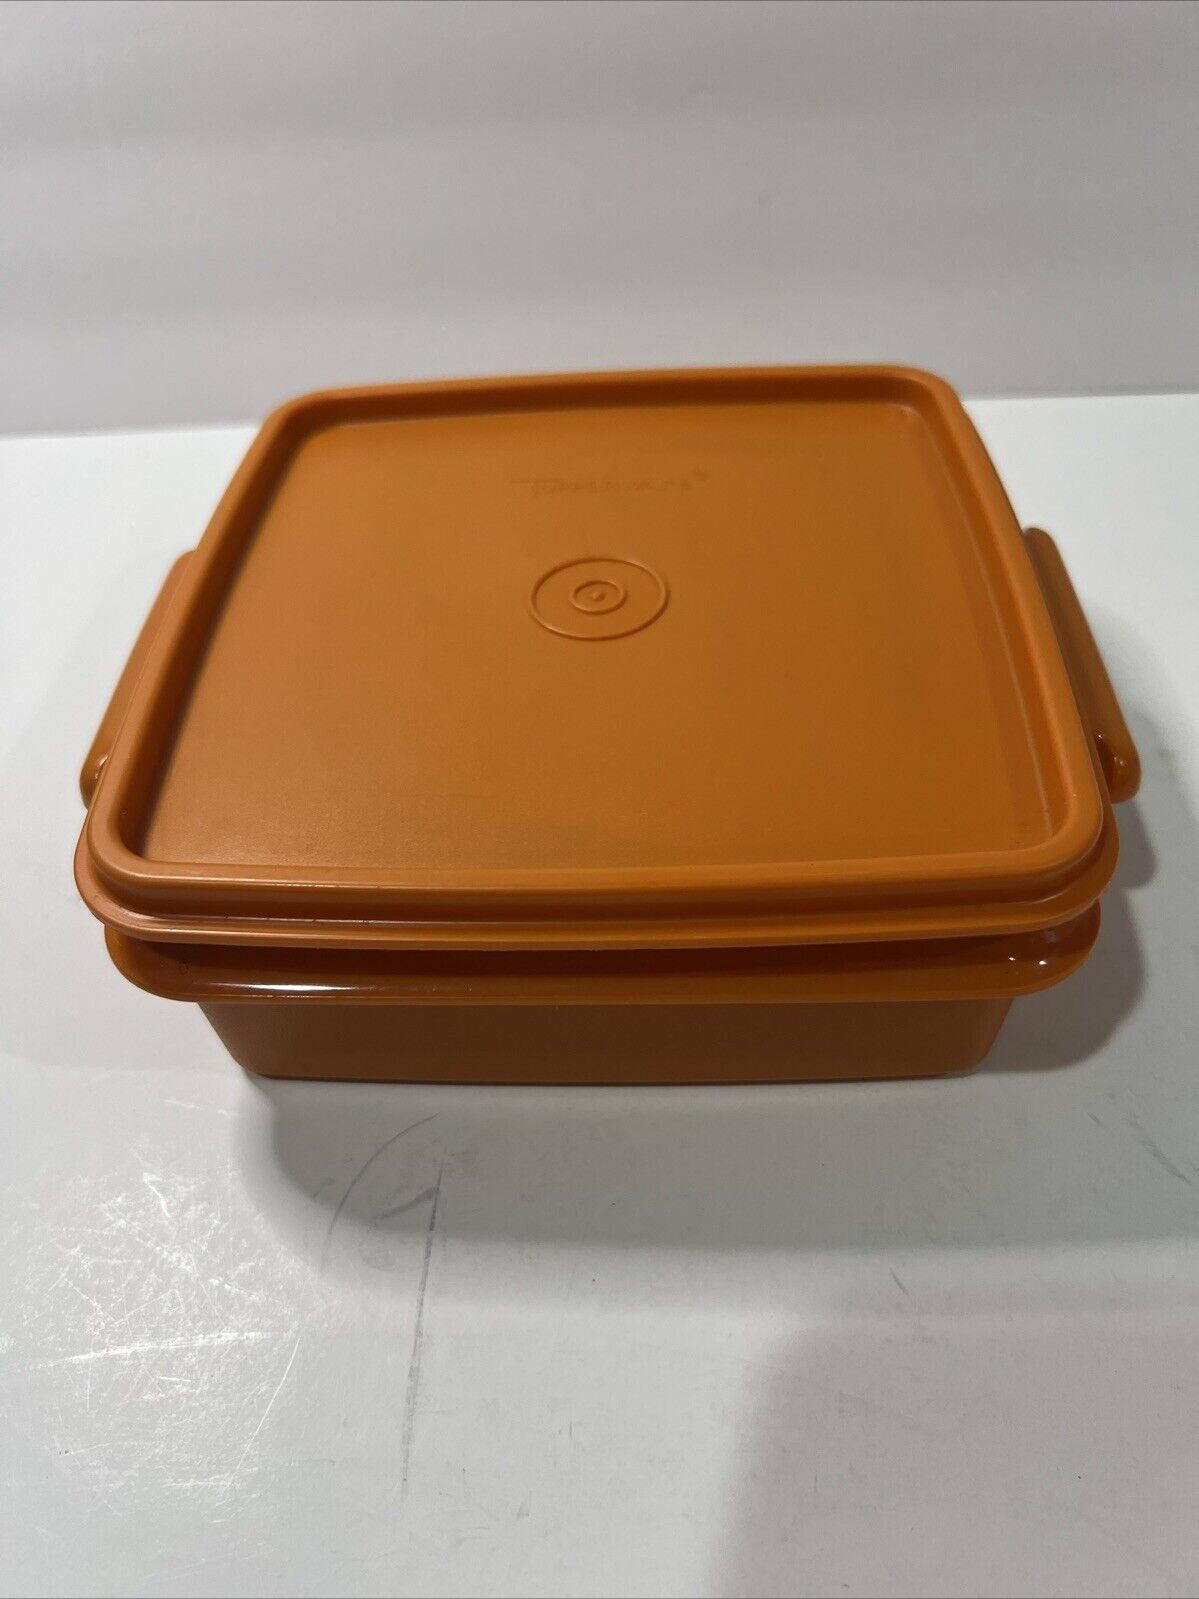 Tupperware 1362-17 Retro Orange  Container With 1363-27 Orange Lid Vintage